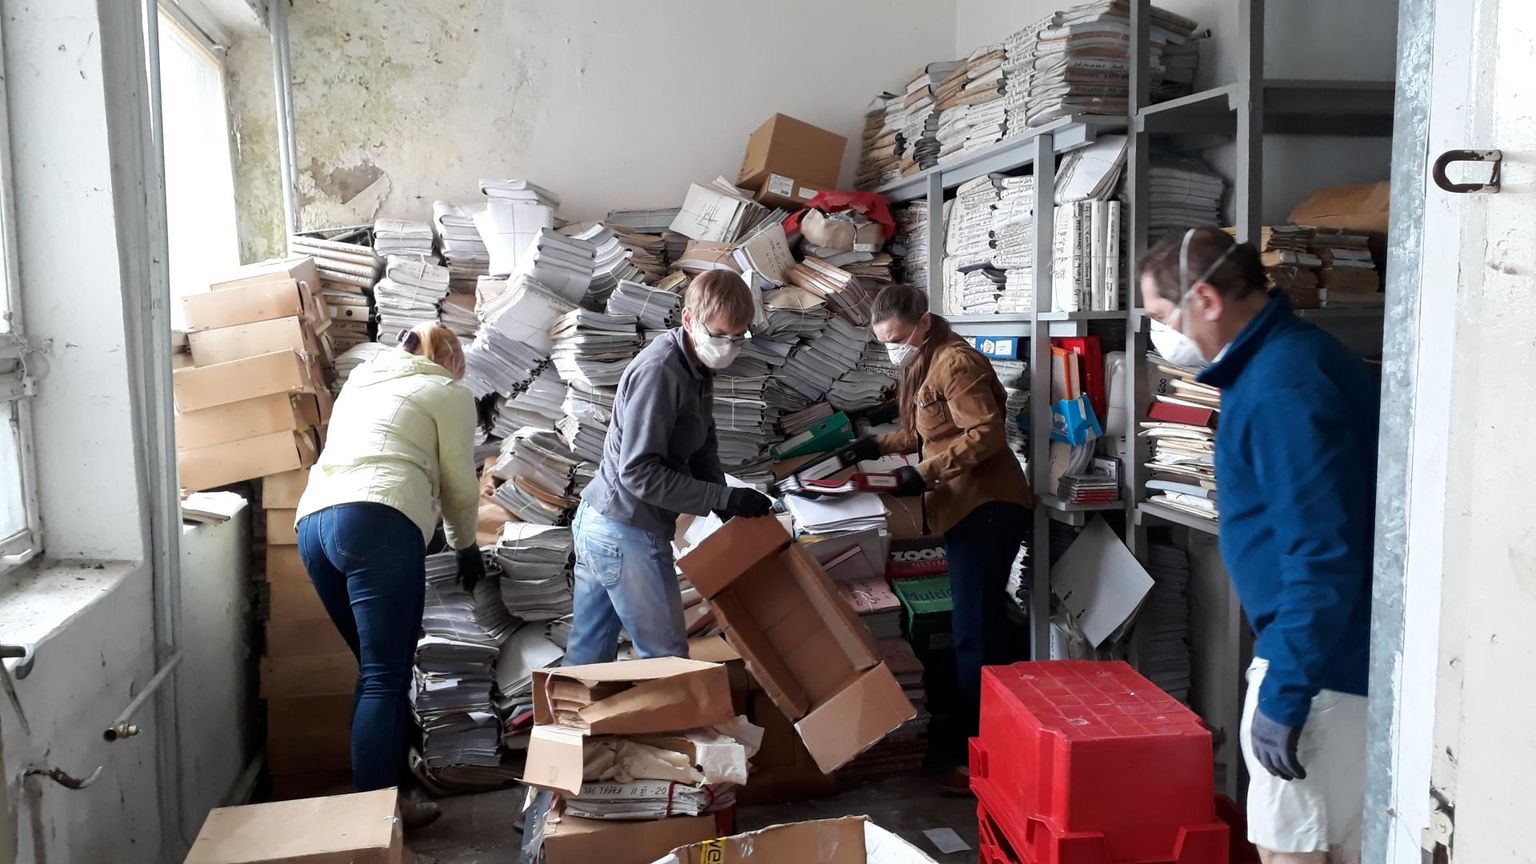 Rahvusarhiivi töötajad sorteerisid loovlinnaku vedajate abiga arhiivi dokumendid väärtuslikeks ja väärtusetuteks, esimesed viidi Tartu arhiivi, teised aga hävitamisele.